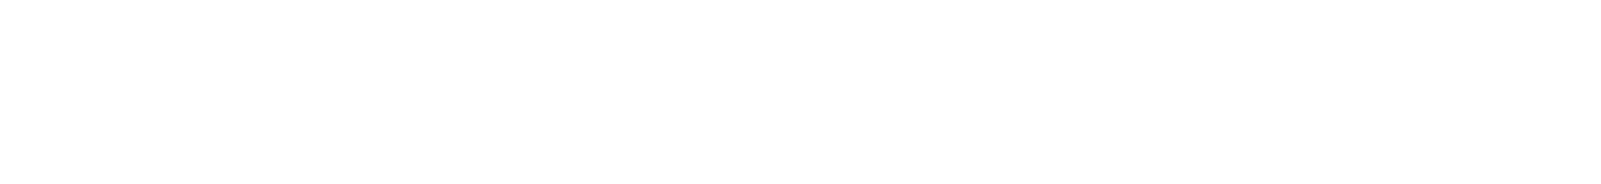 Kadokawa logo large for dark backgrounds (transparent PNG)